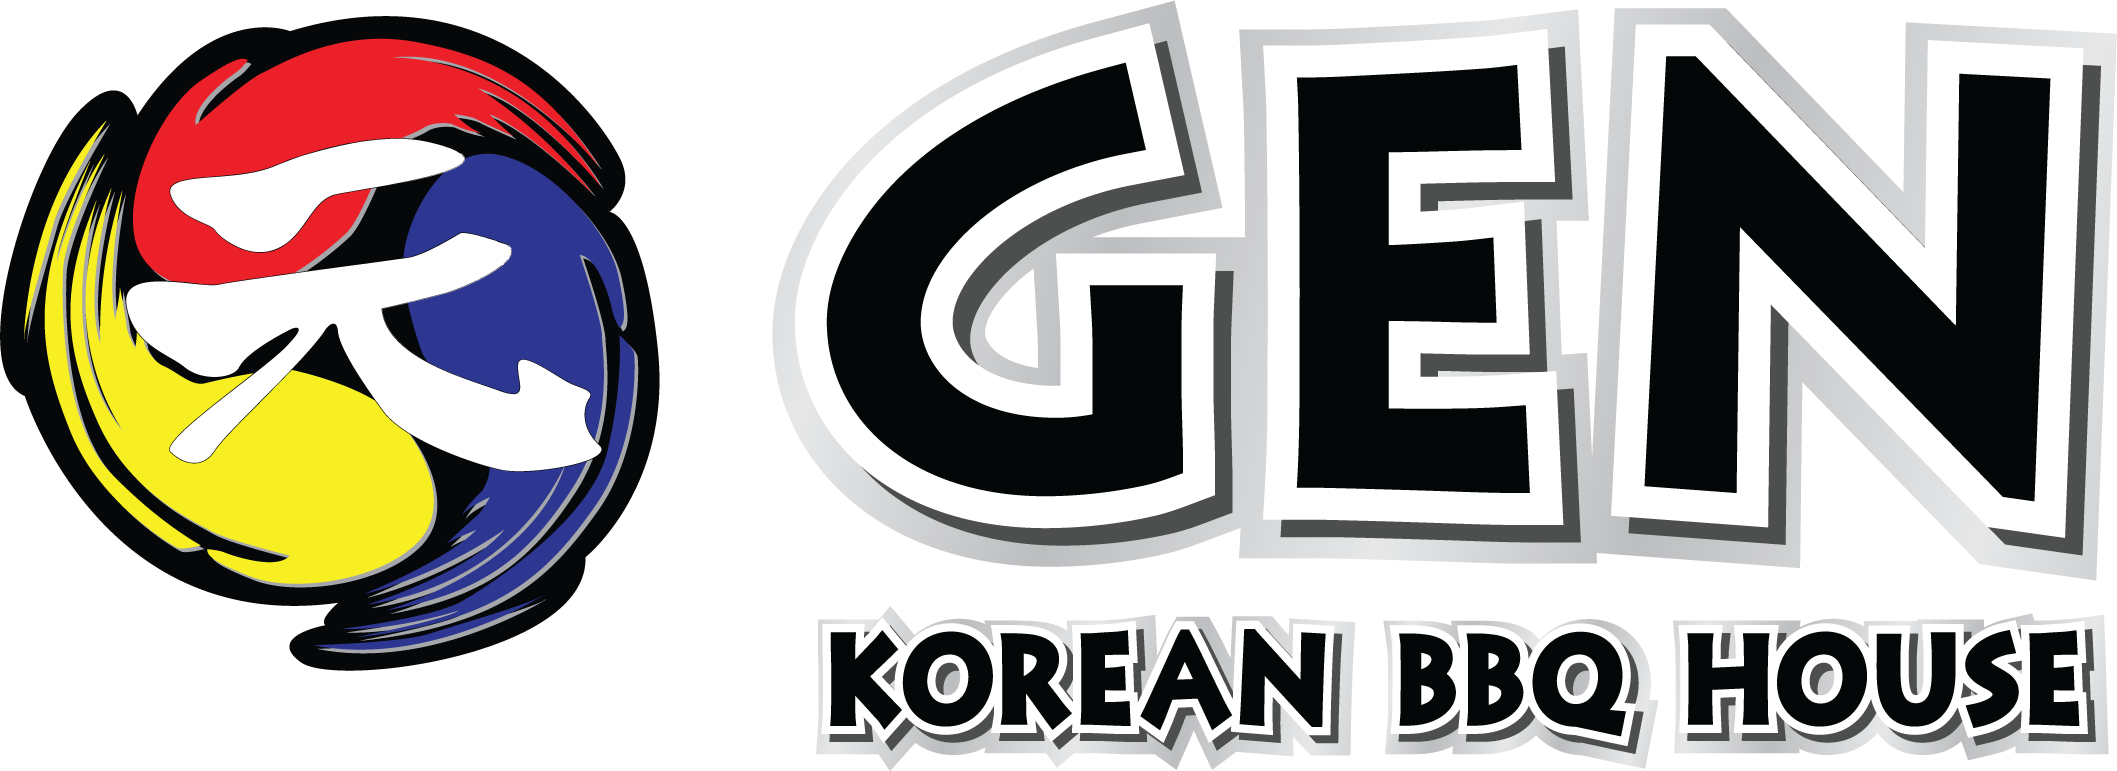 GEN Restaurant Group logo large (transparent PNG)